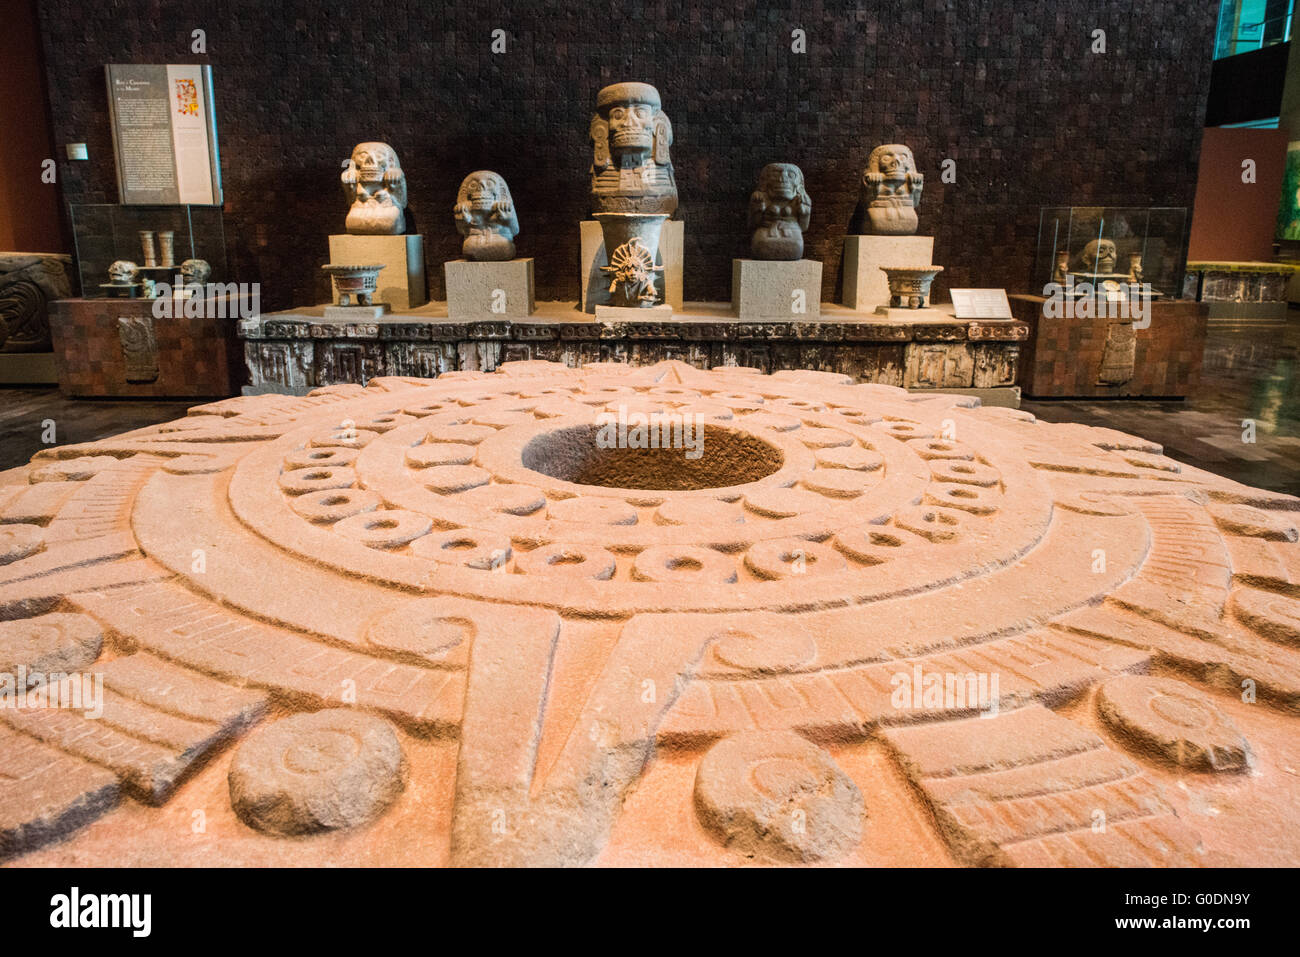 Mexiko-Stadt, Mexiko - The National Museum of Anthropology Vitrinen bedeutende archäologische und anthropologische Artefakte aus der mexikanischen präkolumbischen Erbes, einschließlich der Azteken und indiginous Kulturen. Stockfoto